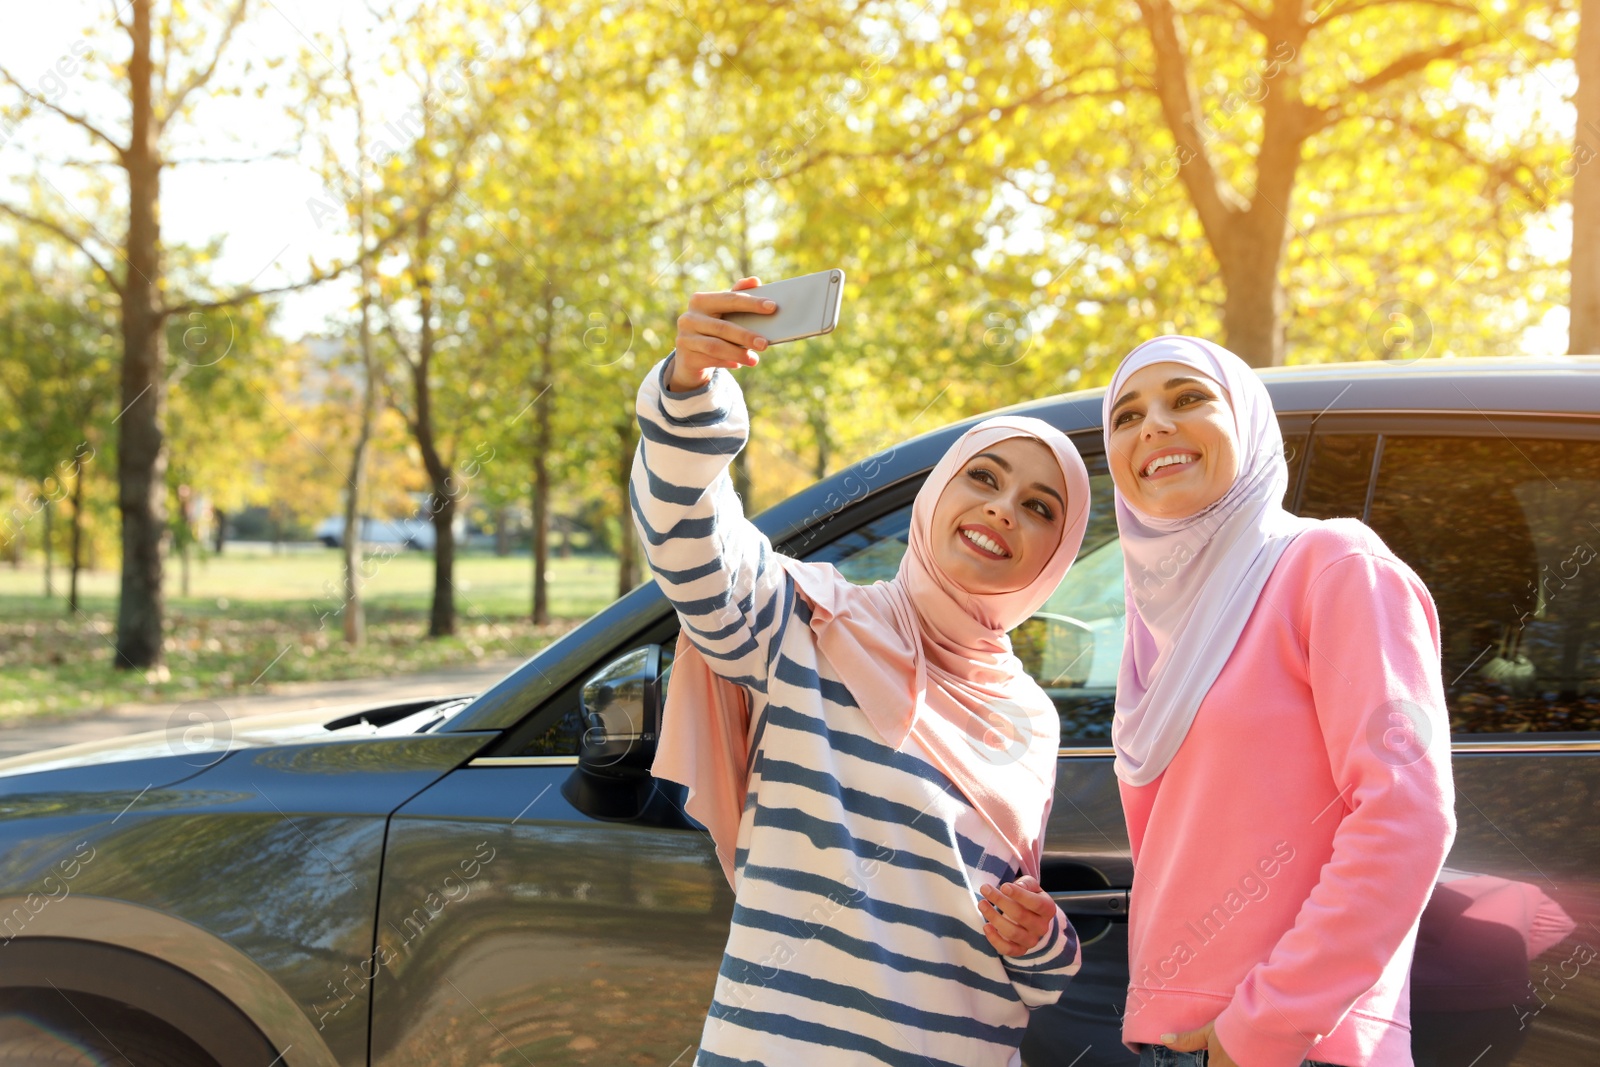 Photo of Muslim women taking selfie near car, outdoors